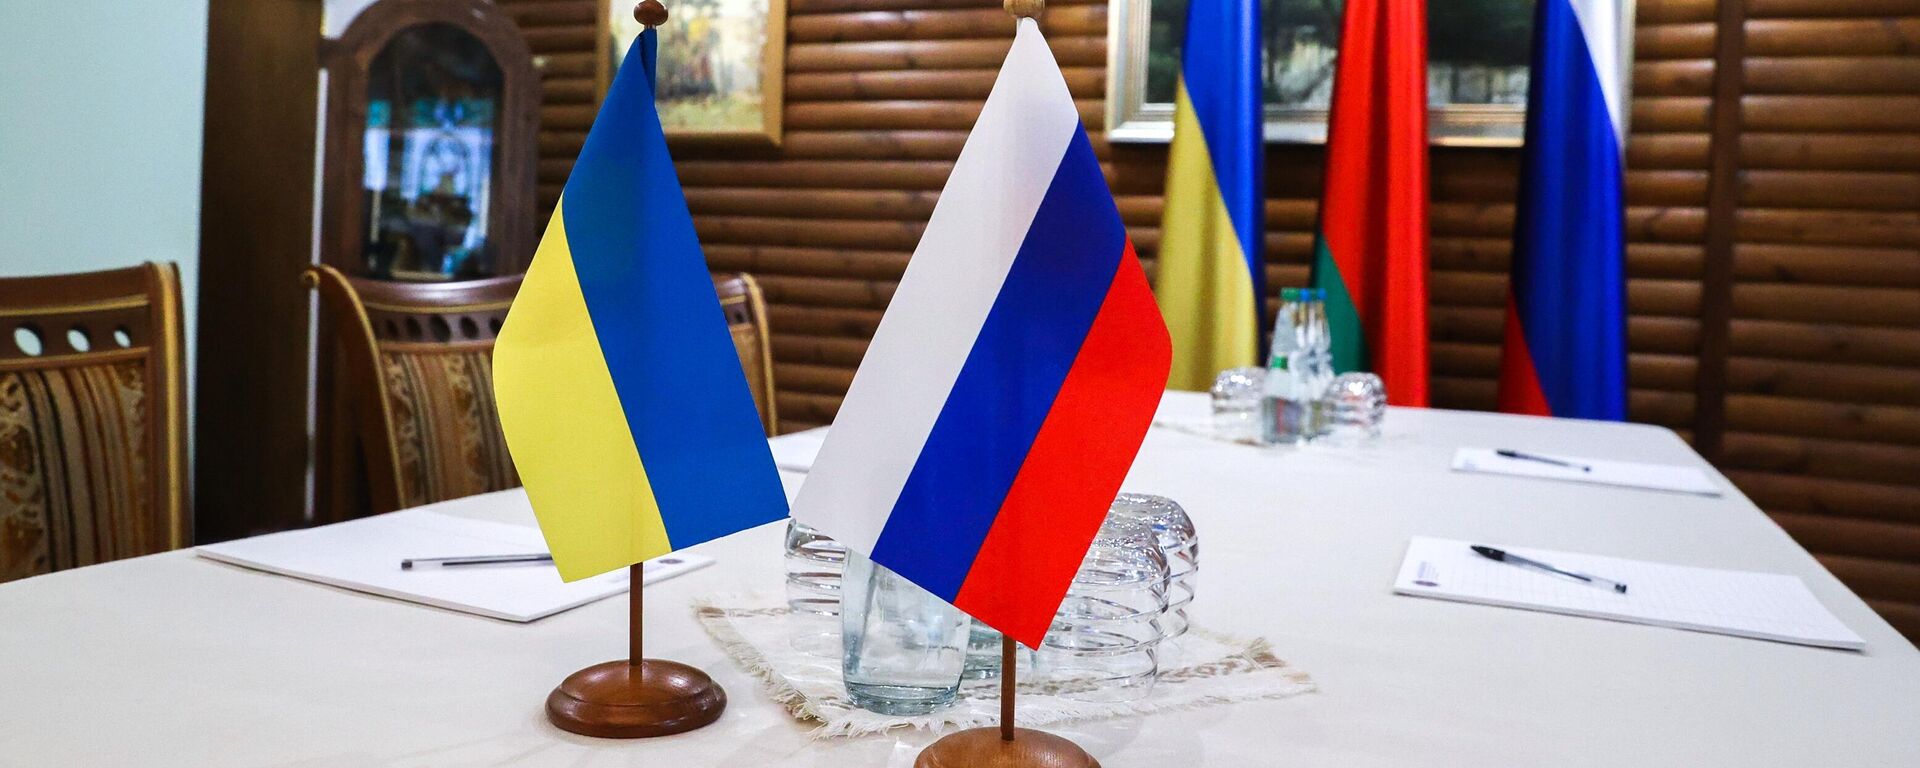 Стол, за которым пройдет третий раунд переговоров между Россией и Украиной (7 марта 2022). Беловежская Пуща - Sputnik Армения, 1920, 09.03.2022